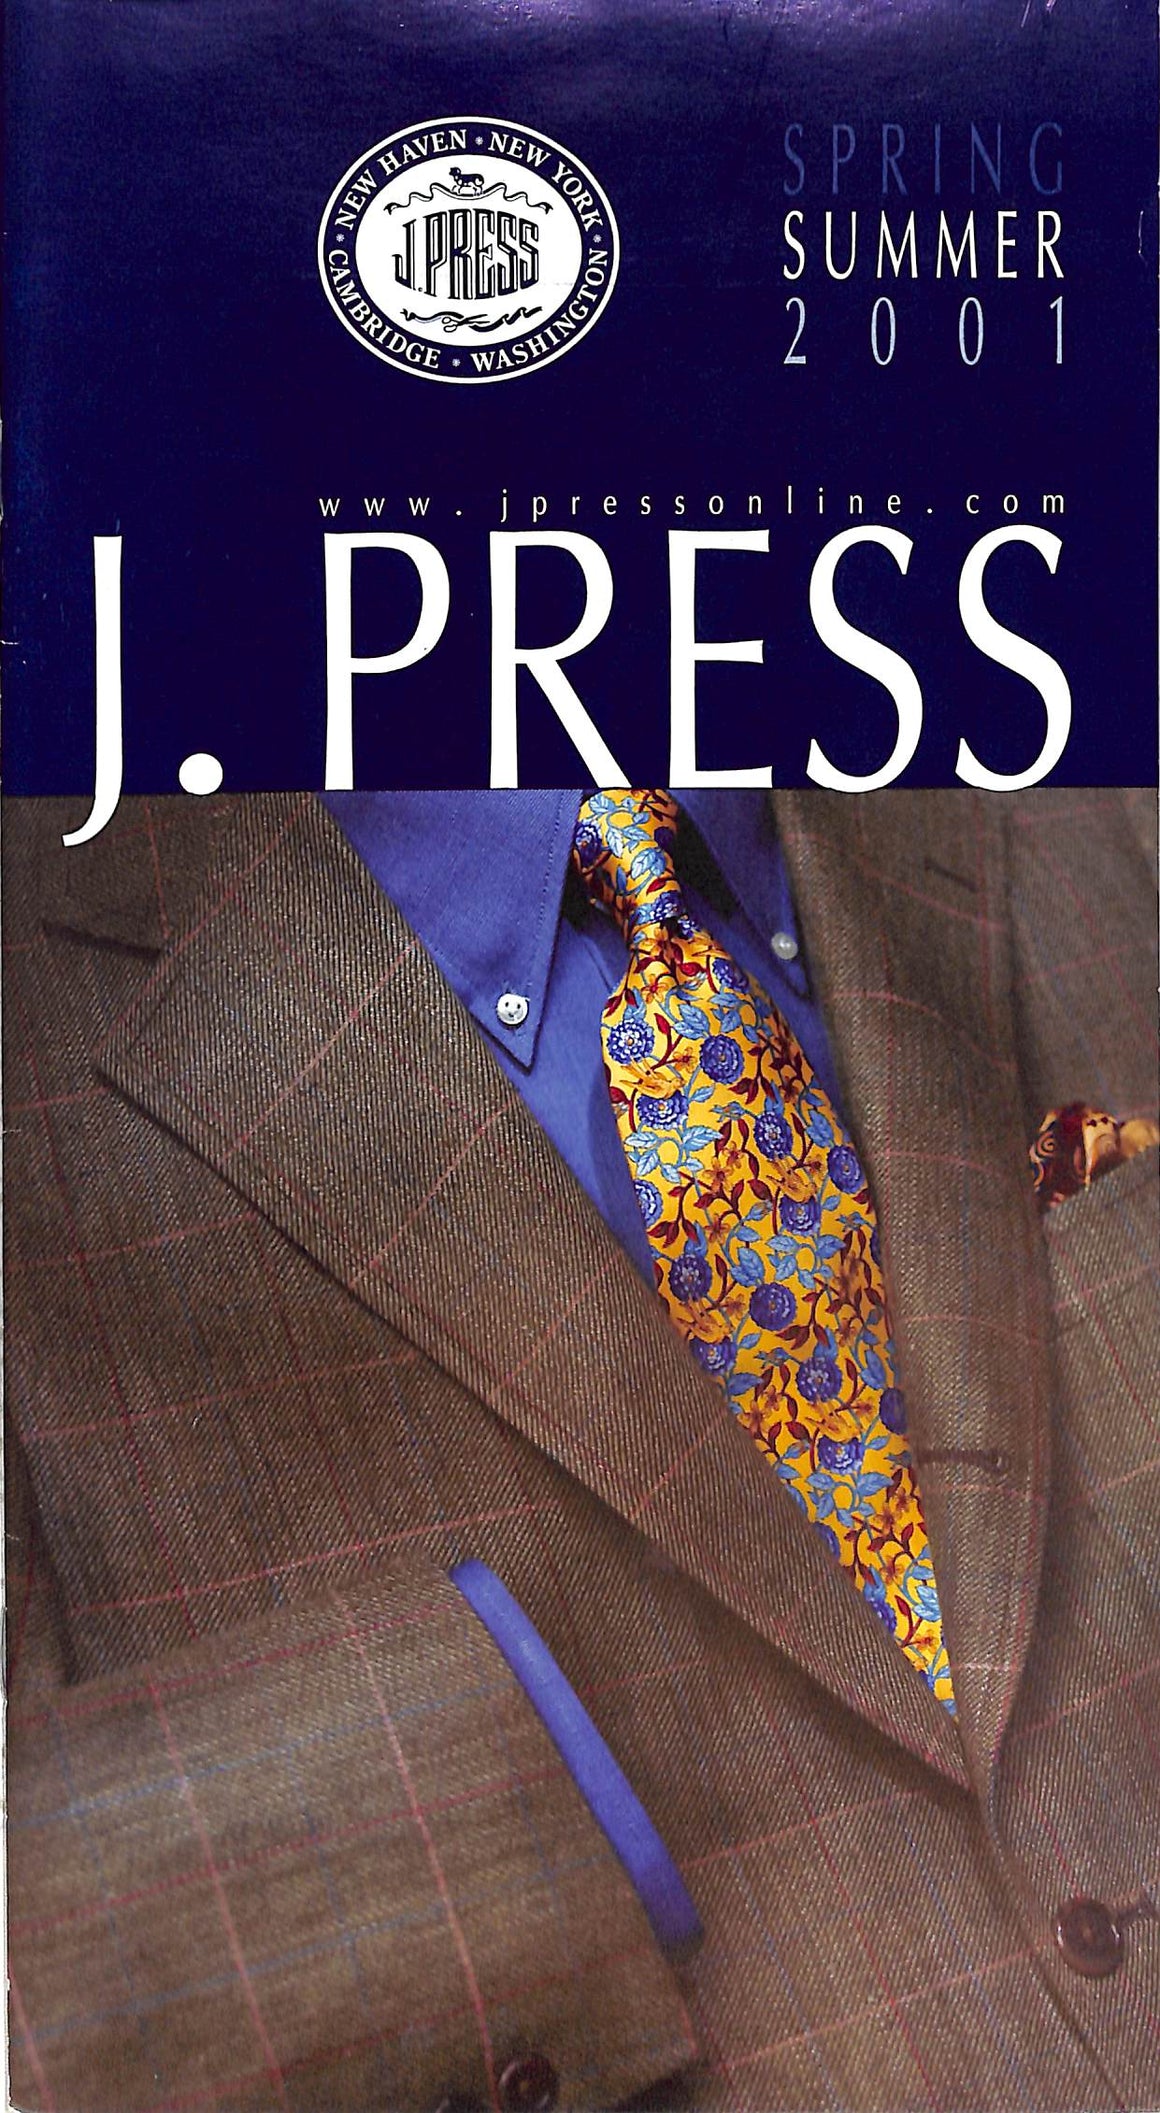 J. Press Spring Summer 2001 Catalog